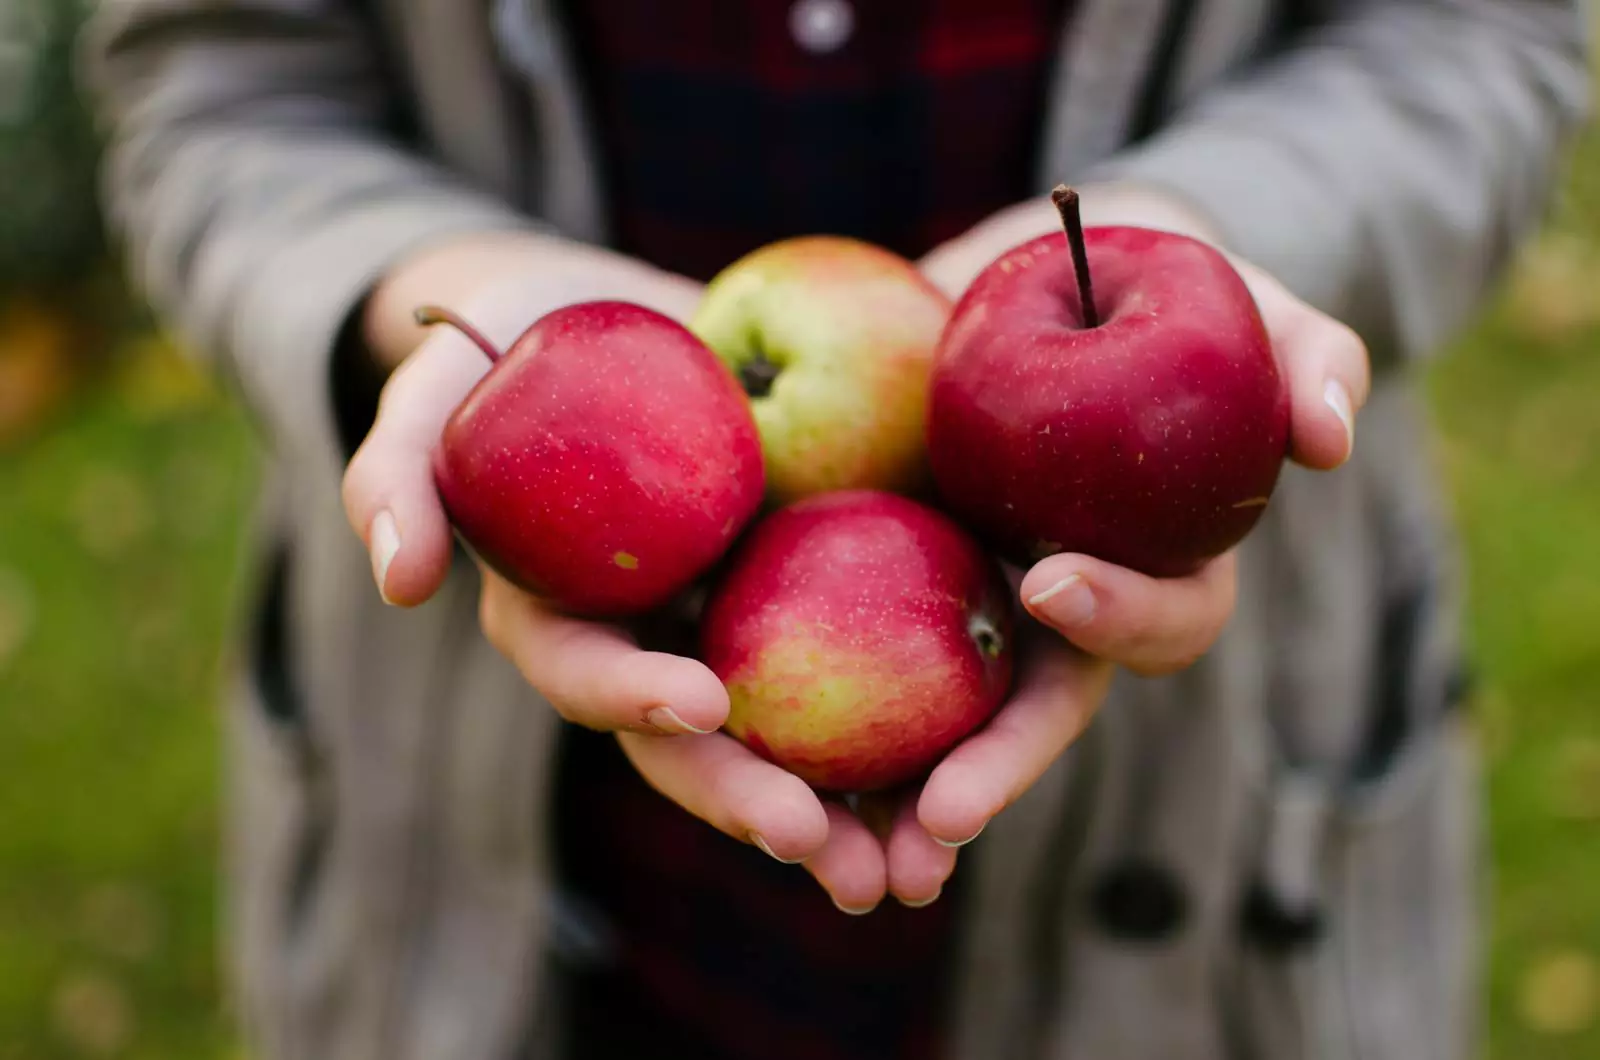 Некоторые продукты дешевле покупать только в сезон. Ягоды лучше брать летом, яблоки осенью, хурму в начале зимы и так далее.